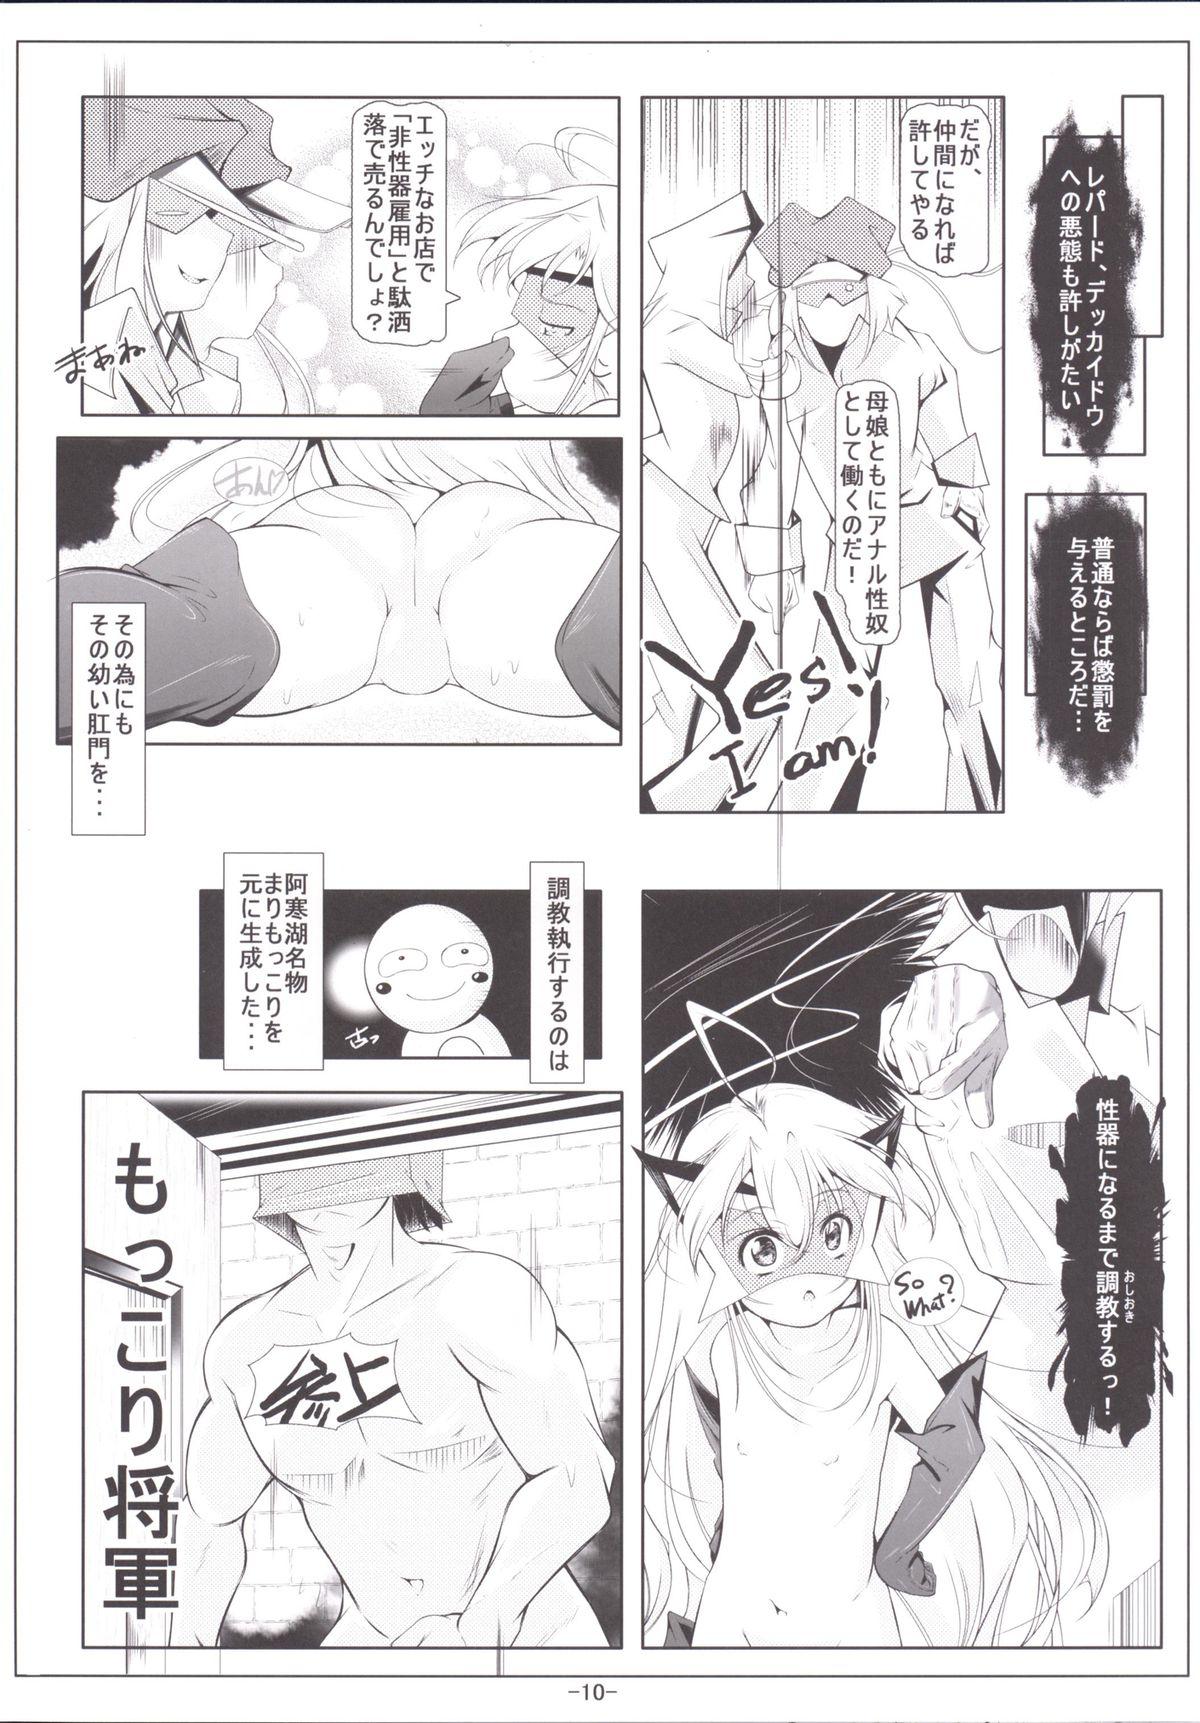 Stockings Leopard-chan Oshiri no Ana de Yoru no Oshigoto - Yoru no yatterman Novinha - Page 11